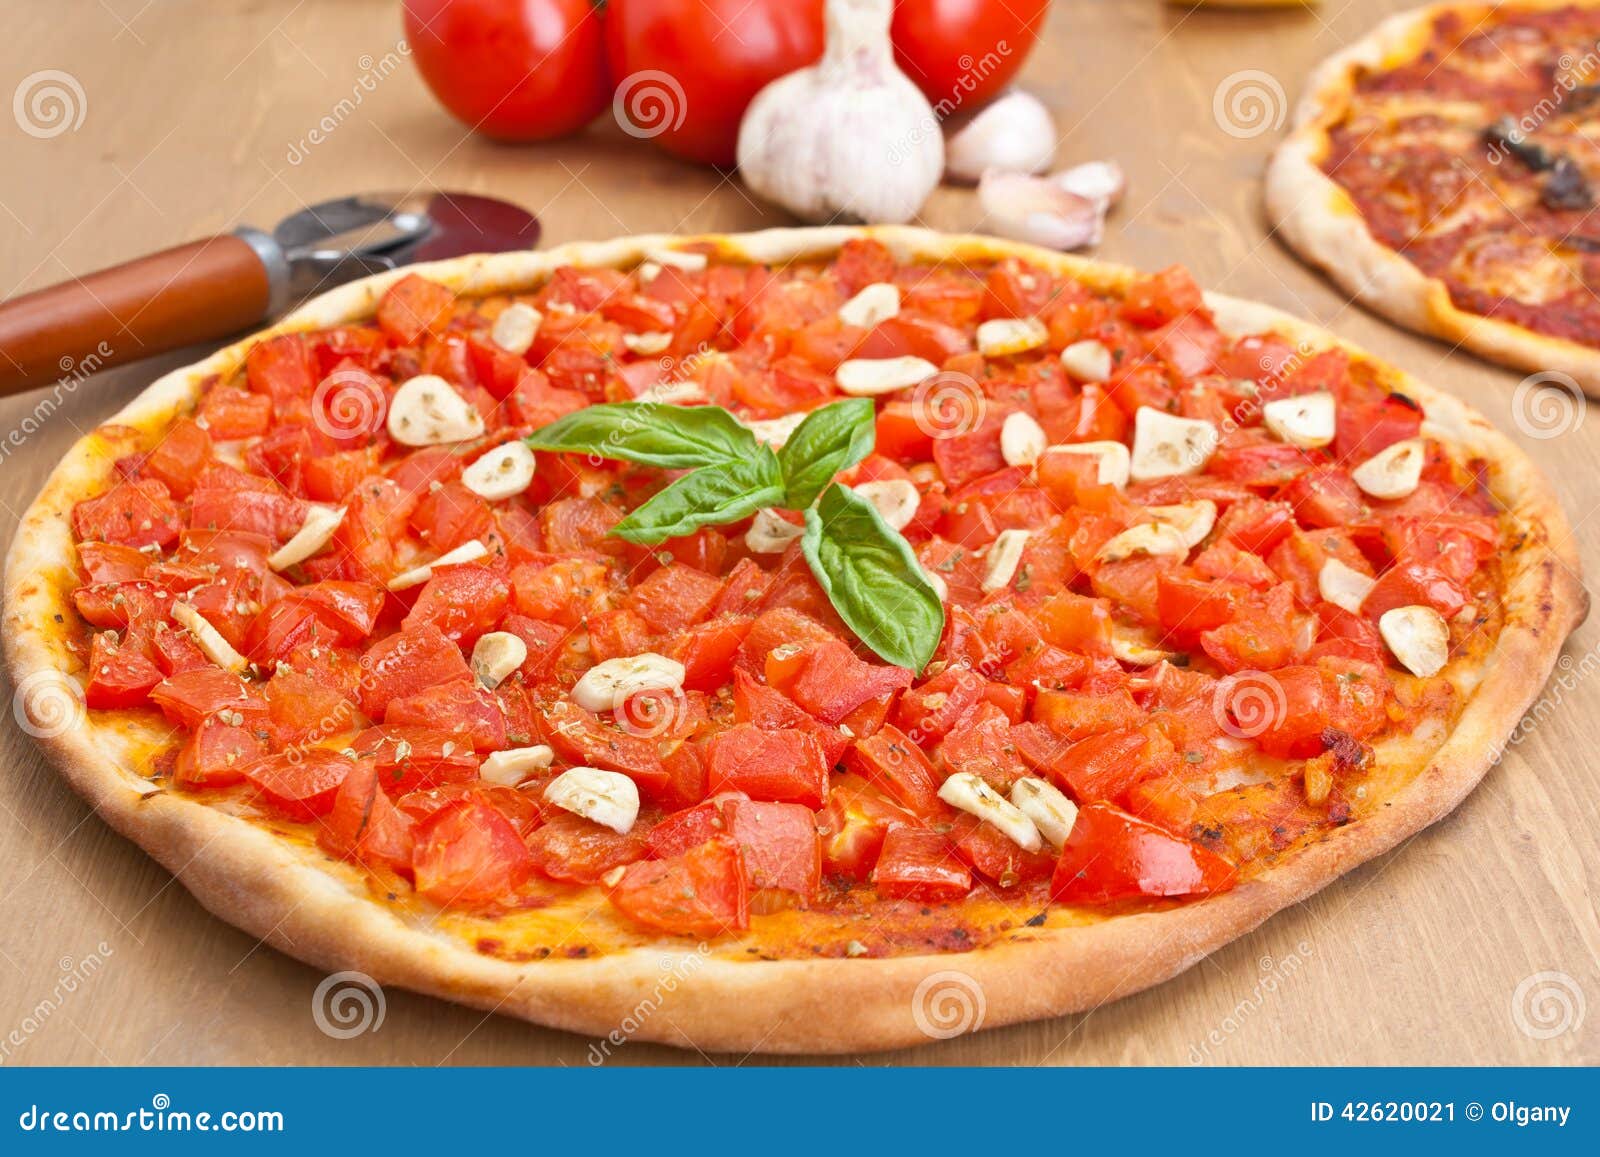 что такое пицца маринара рецепт фото 110